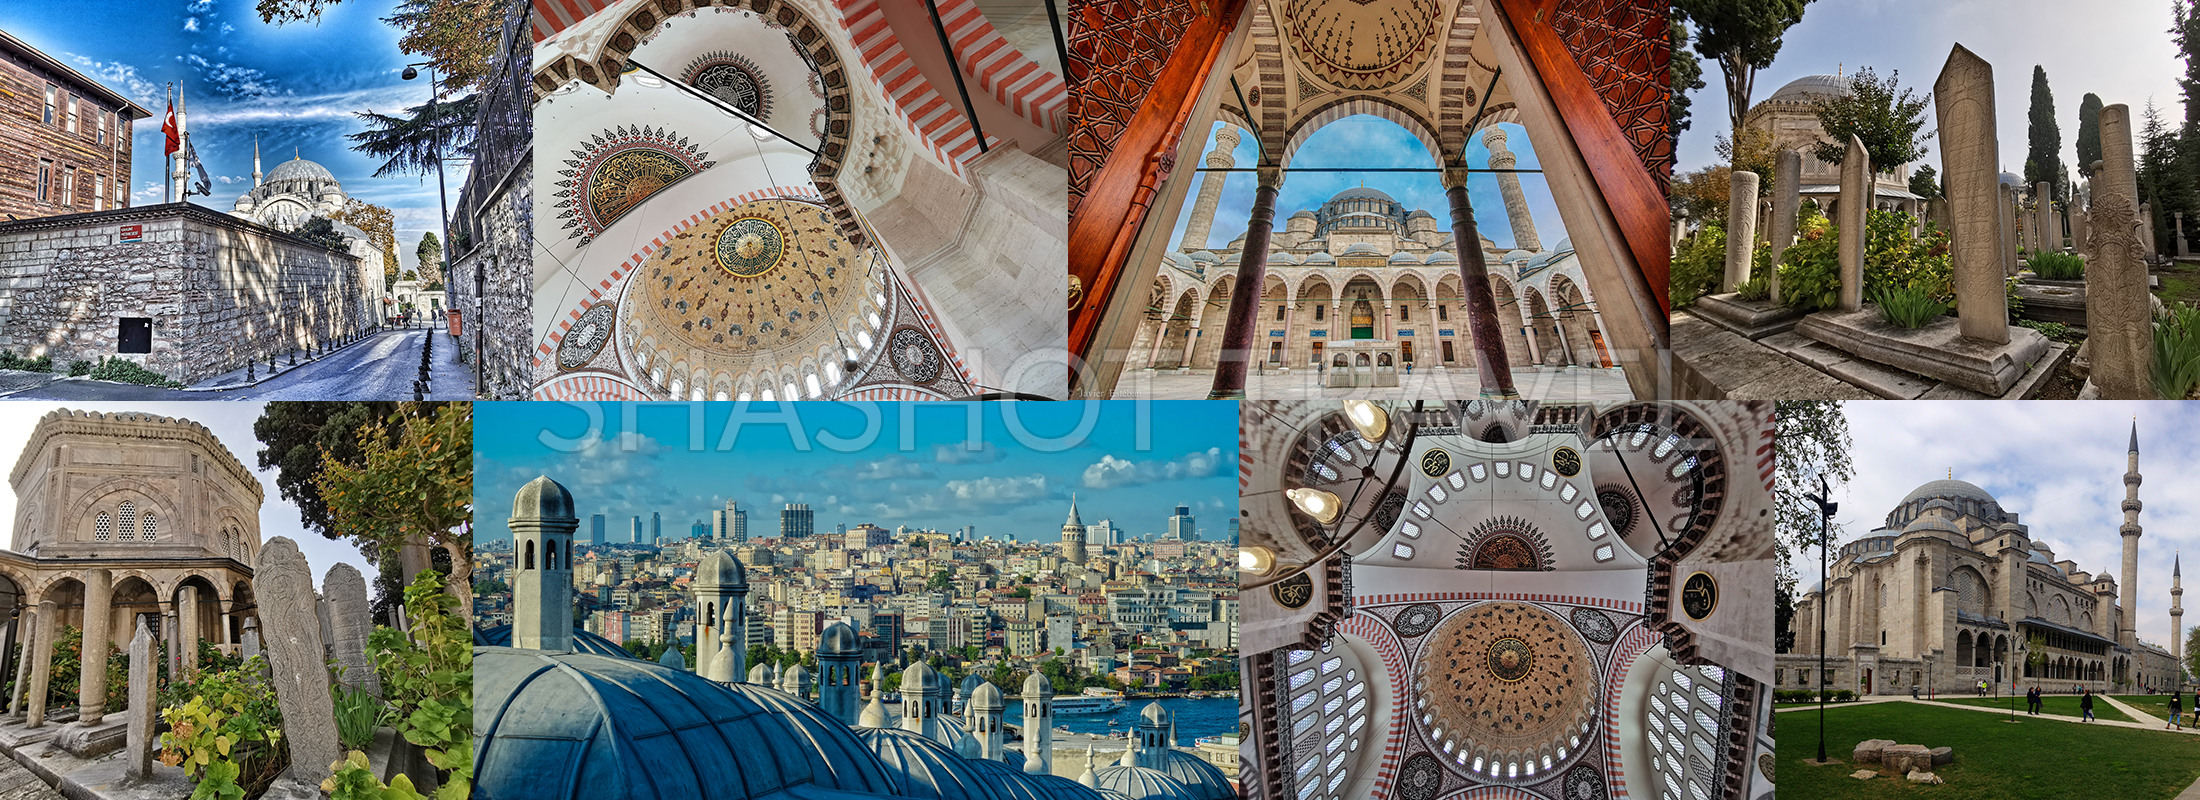 suleymaniye-mosque-turkey-turkiye-shashot-travel